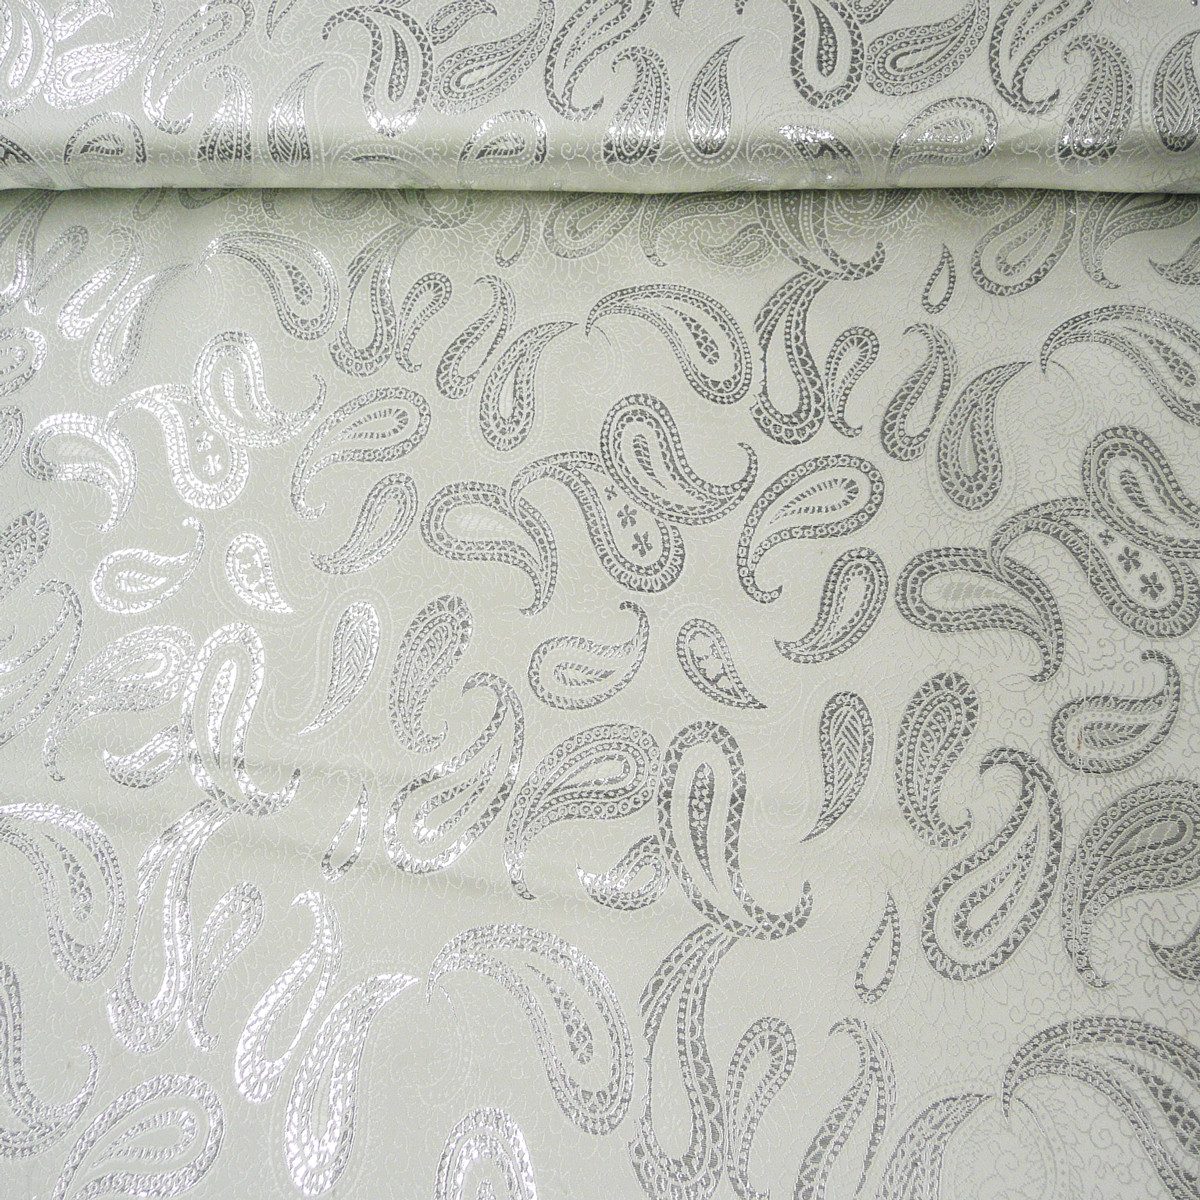 SCHÖNER LEBEN. Stoff Lurex Jaquard Stoff Paisley weiß silberfarbig 1,5m Breite, mit Metallic-Effekt